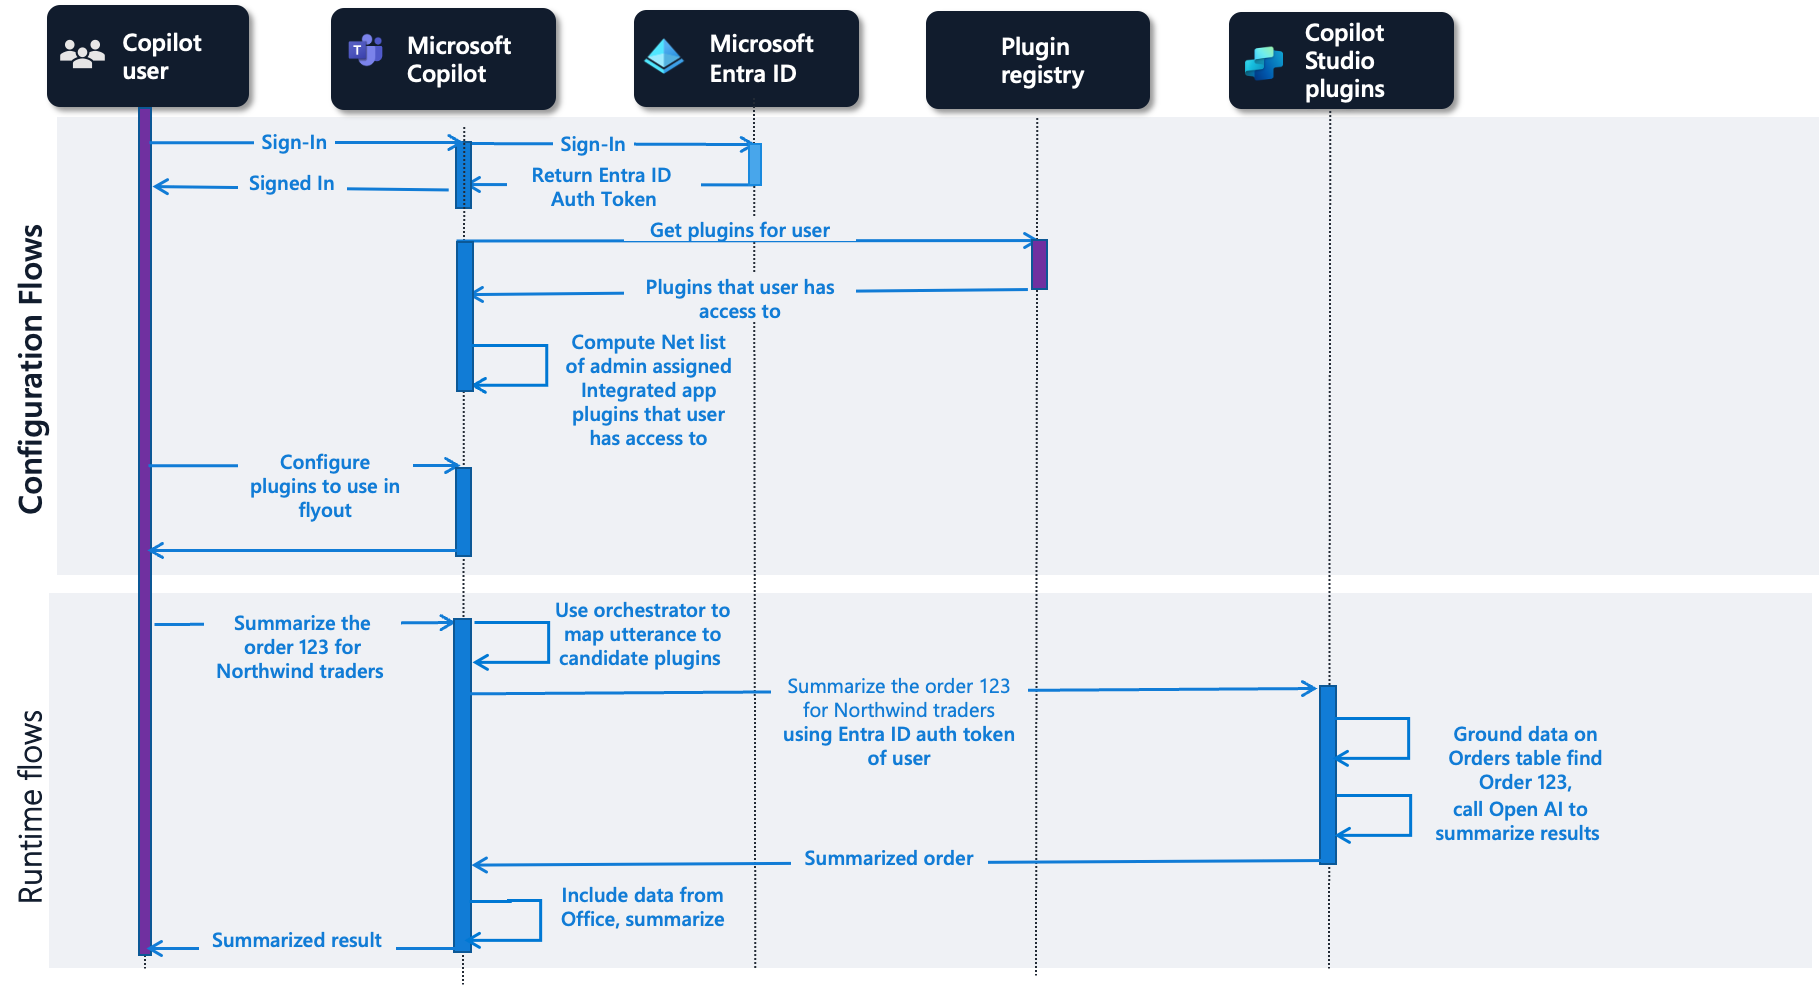 Flow for Microsoft Copilot Studio plugins